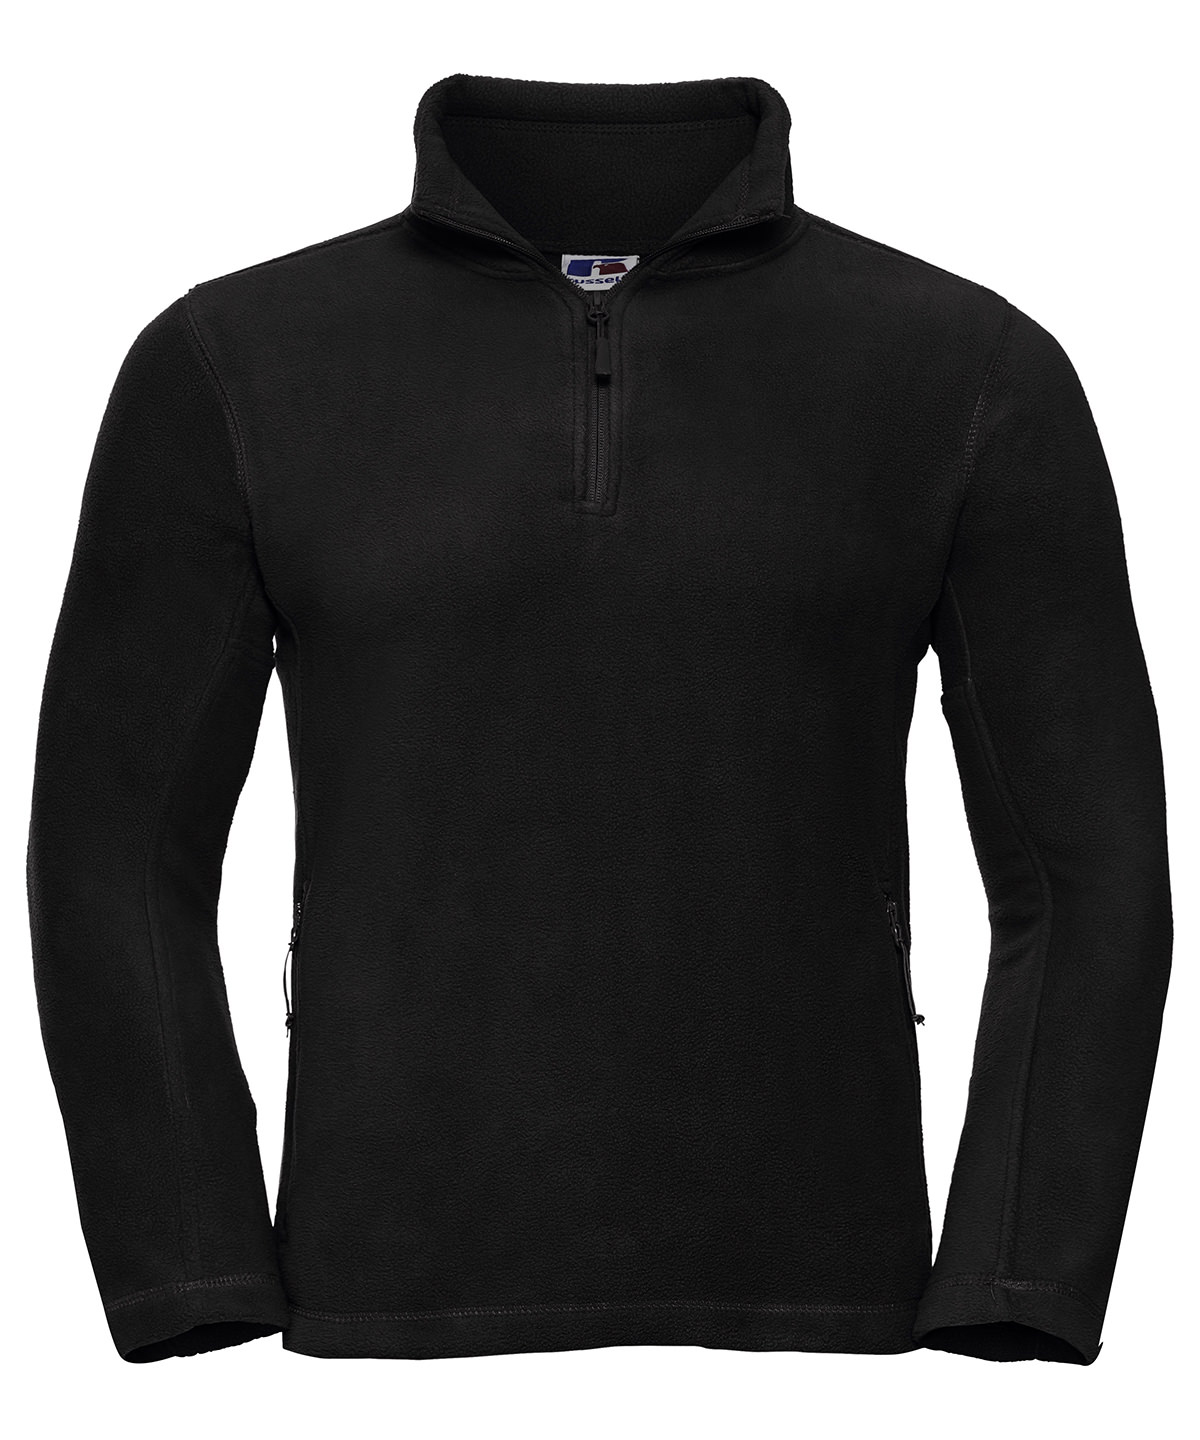 ?-Zip Outdoor Fleece Black Size 2XLarge